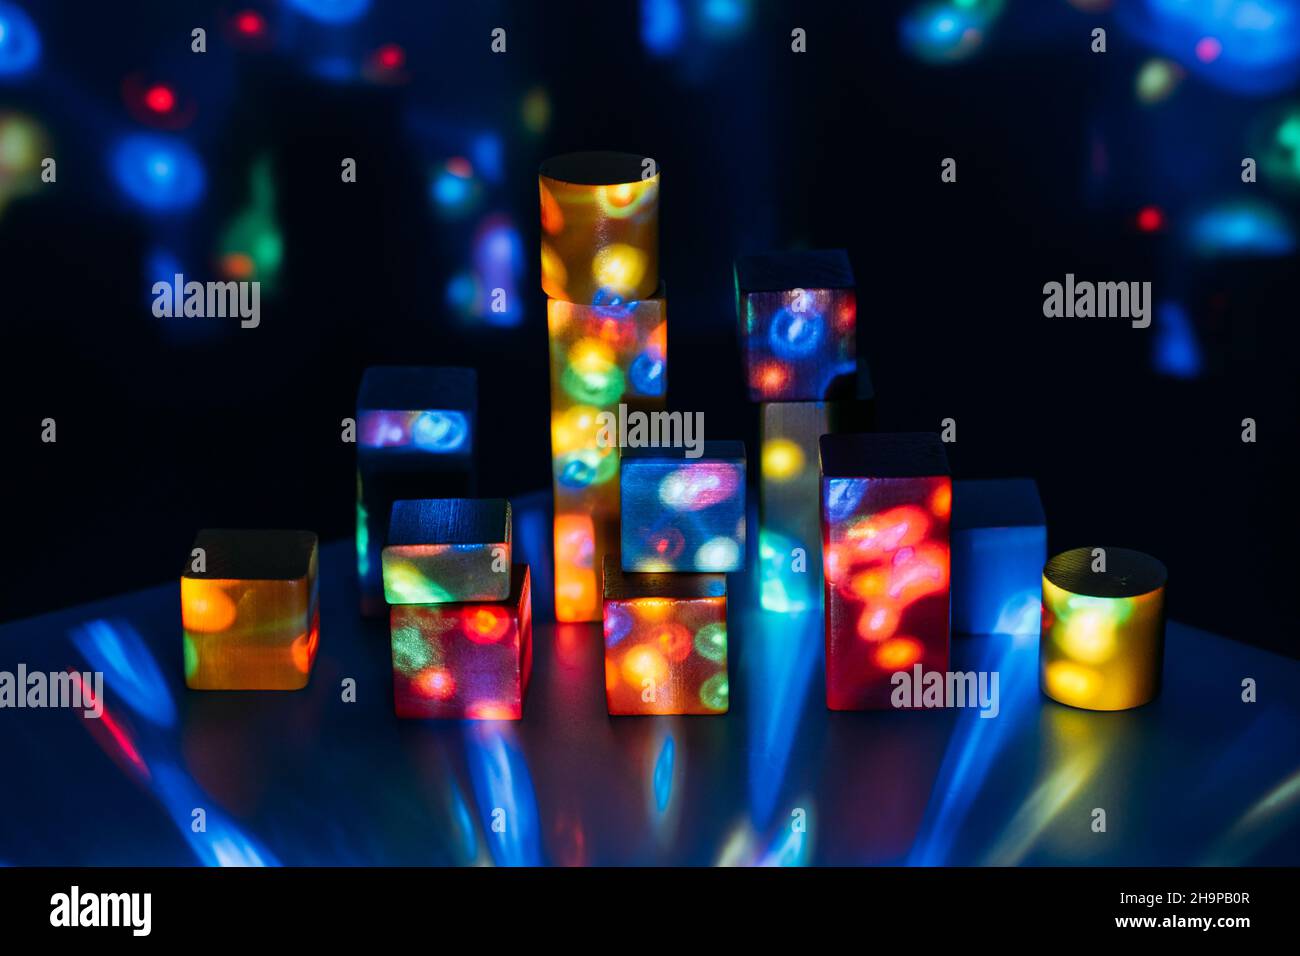 Métaverse, futur, concept de technologie numérique.Blocs de construction en bois sur arrière-plan abstrait de lumières néon multicolores. Banque D'Images